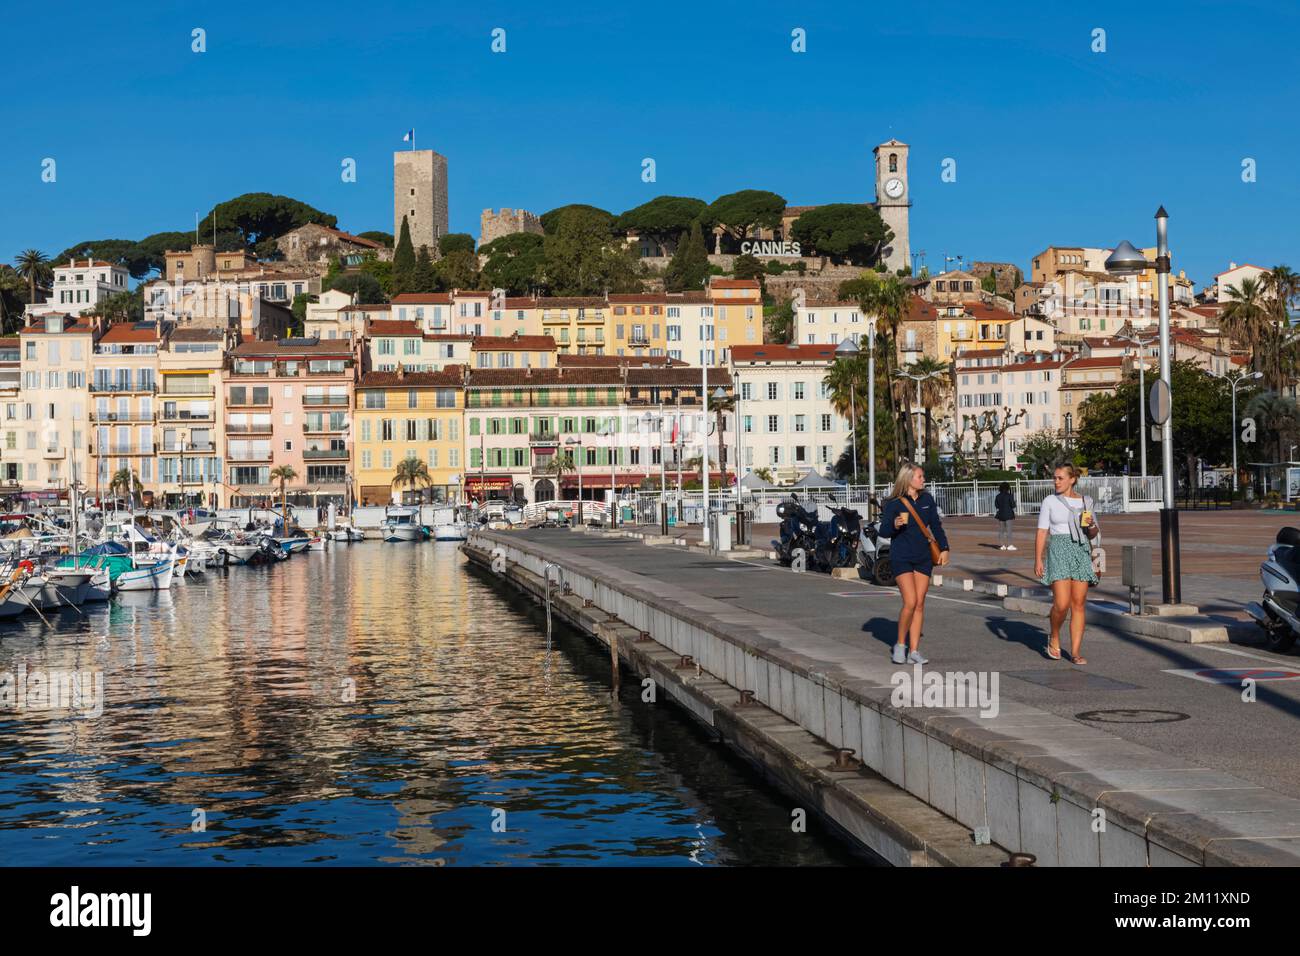 France, French Riviera, Cote d'Azur, Cannes, Le Vieux Port and Le Suquet Area Skyline Stock Photo